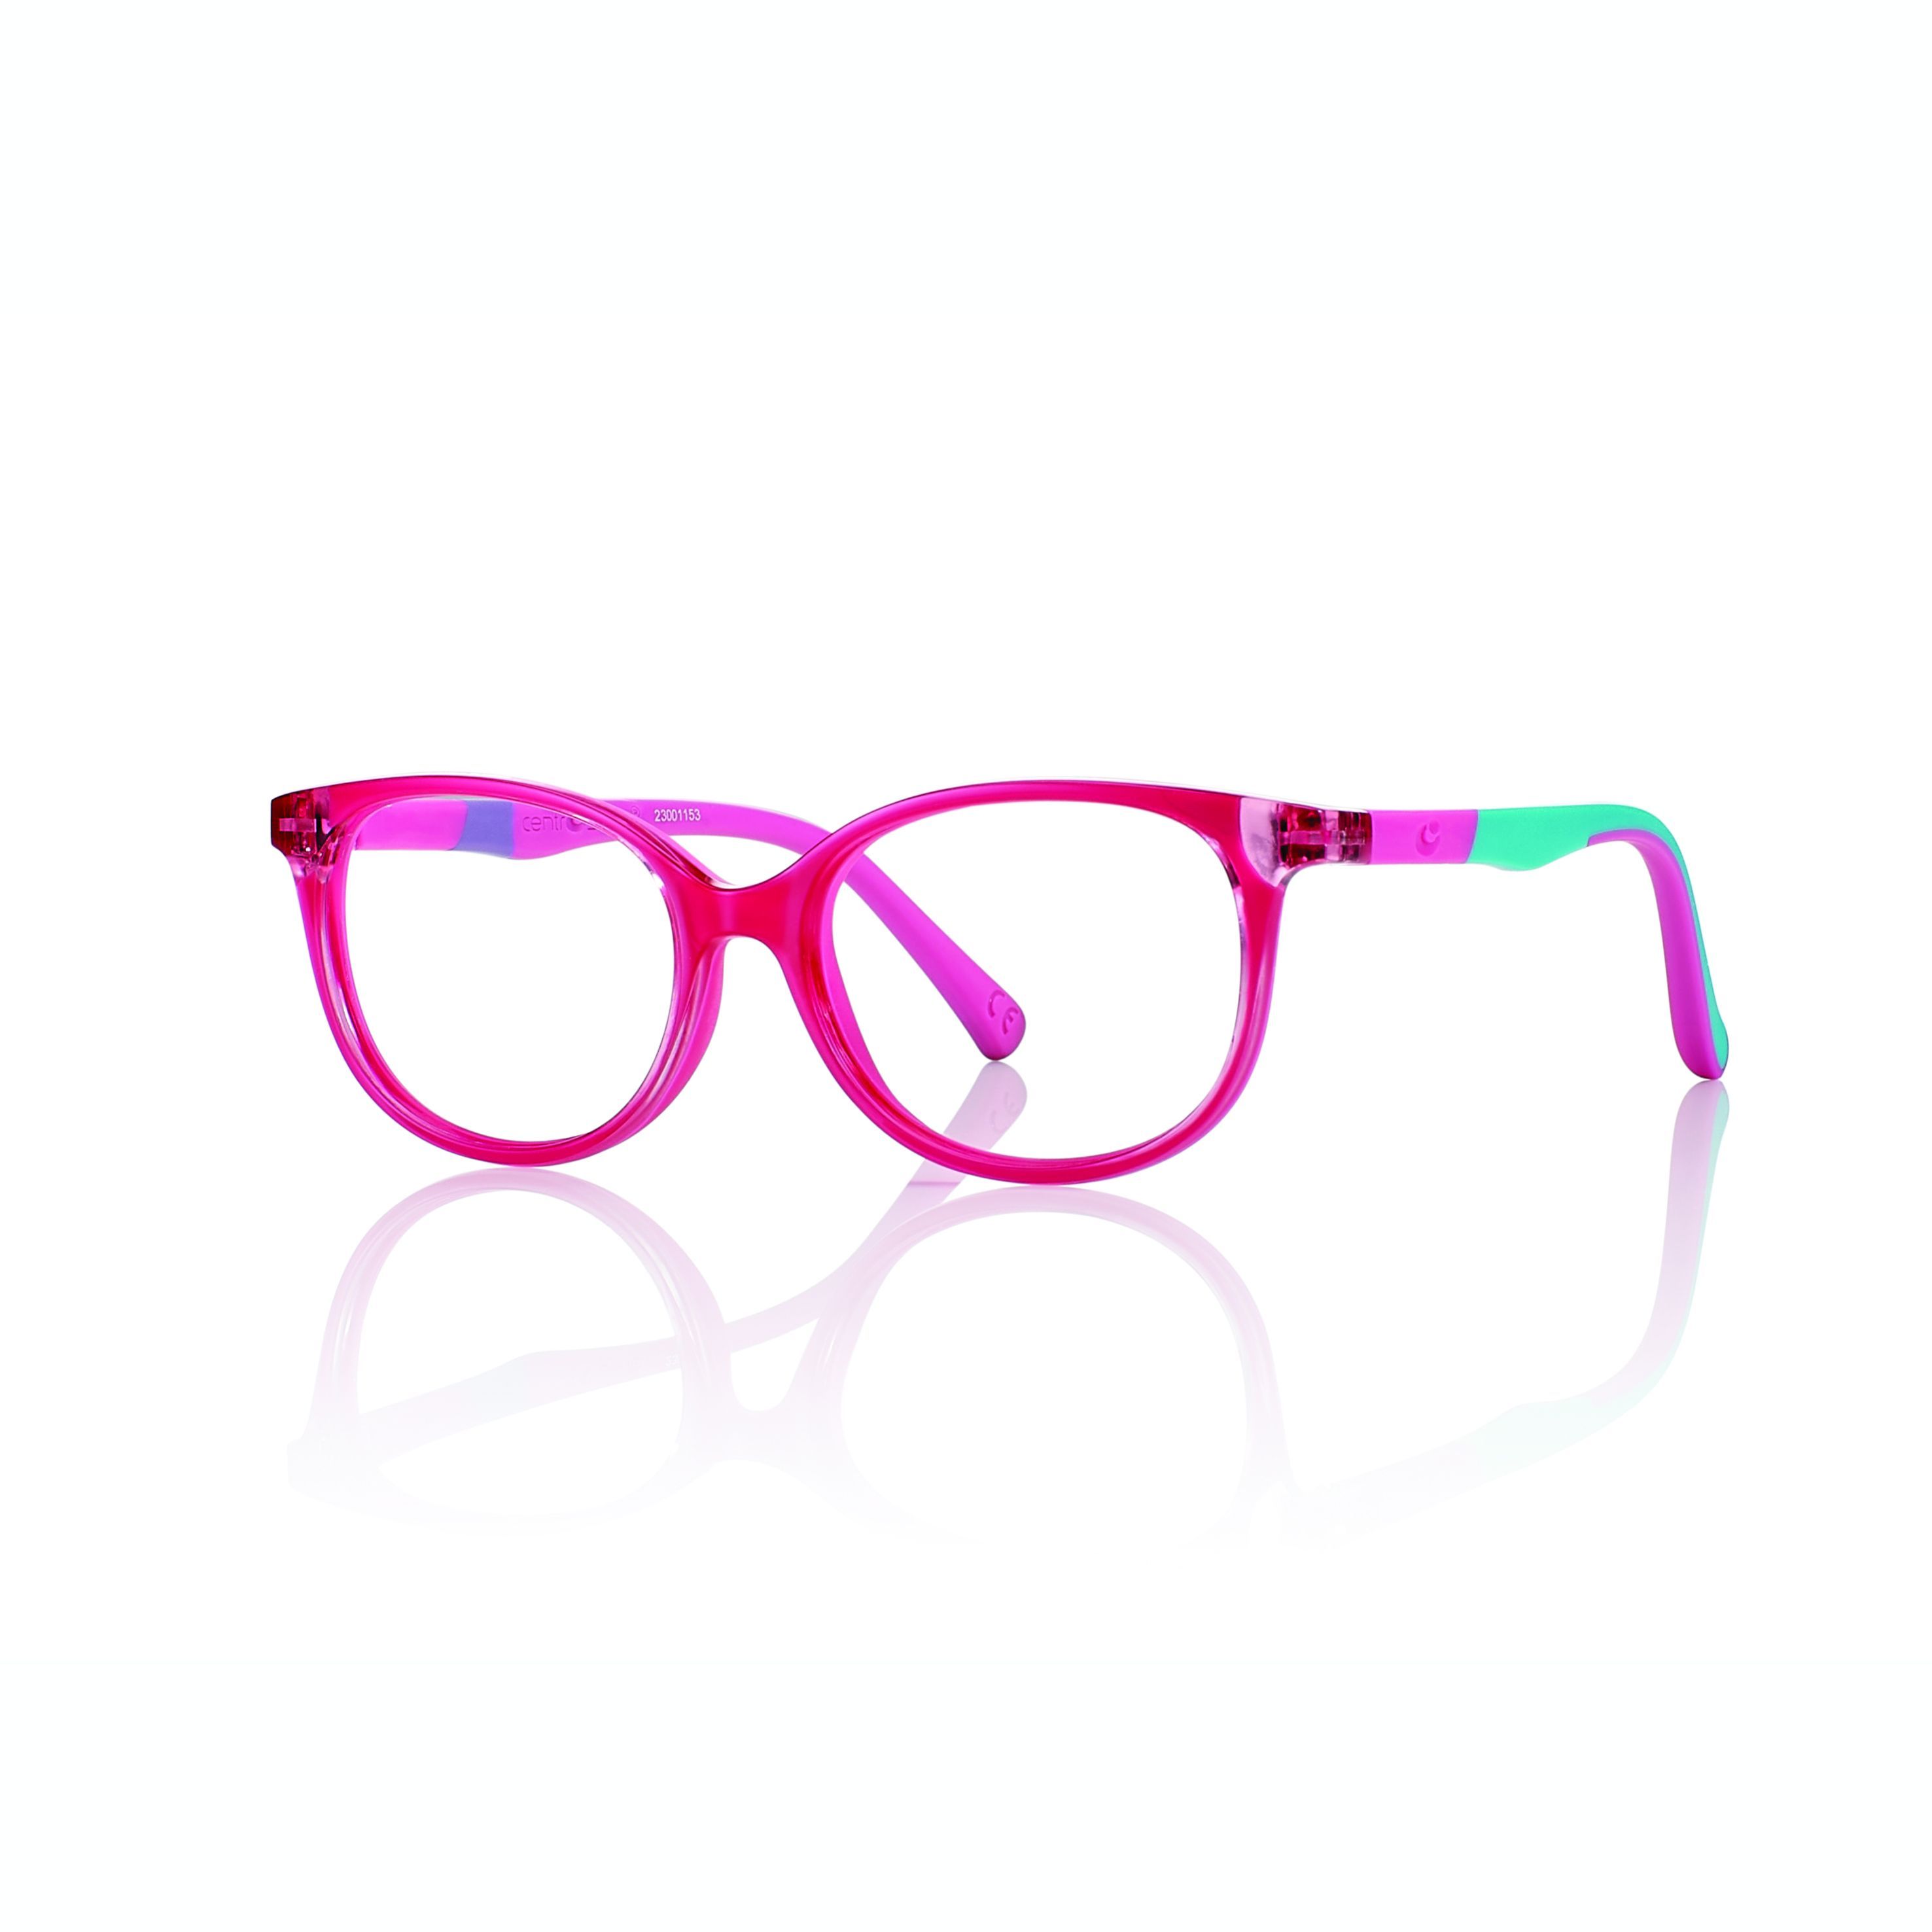 F0172 Panthos Eyeglasses 311 - size 45